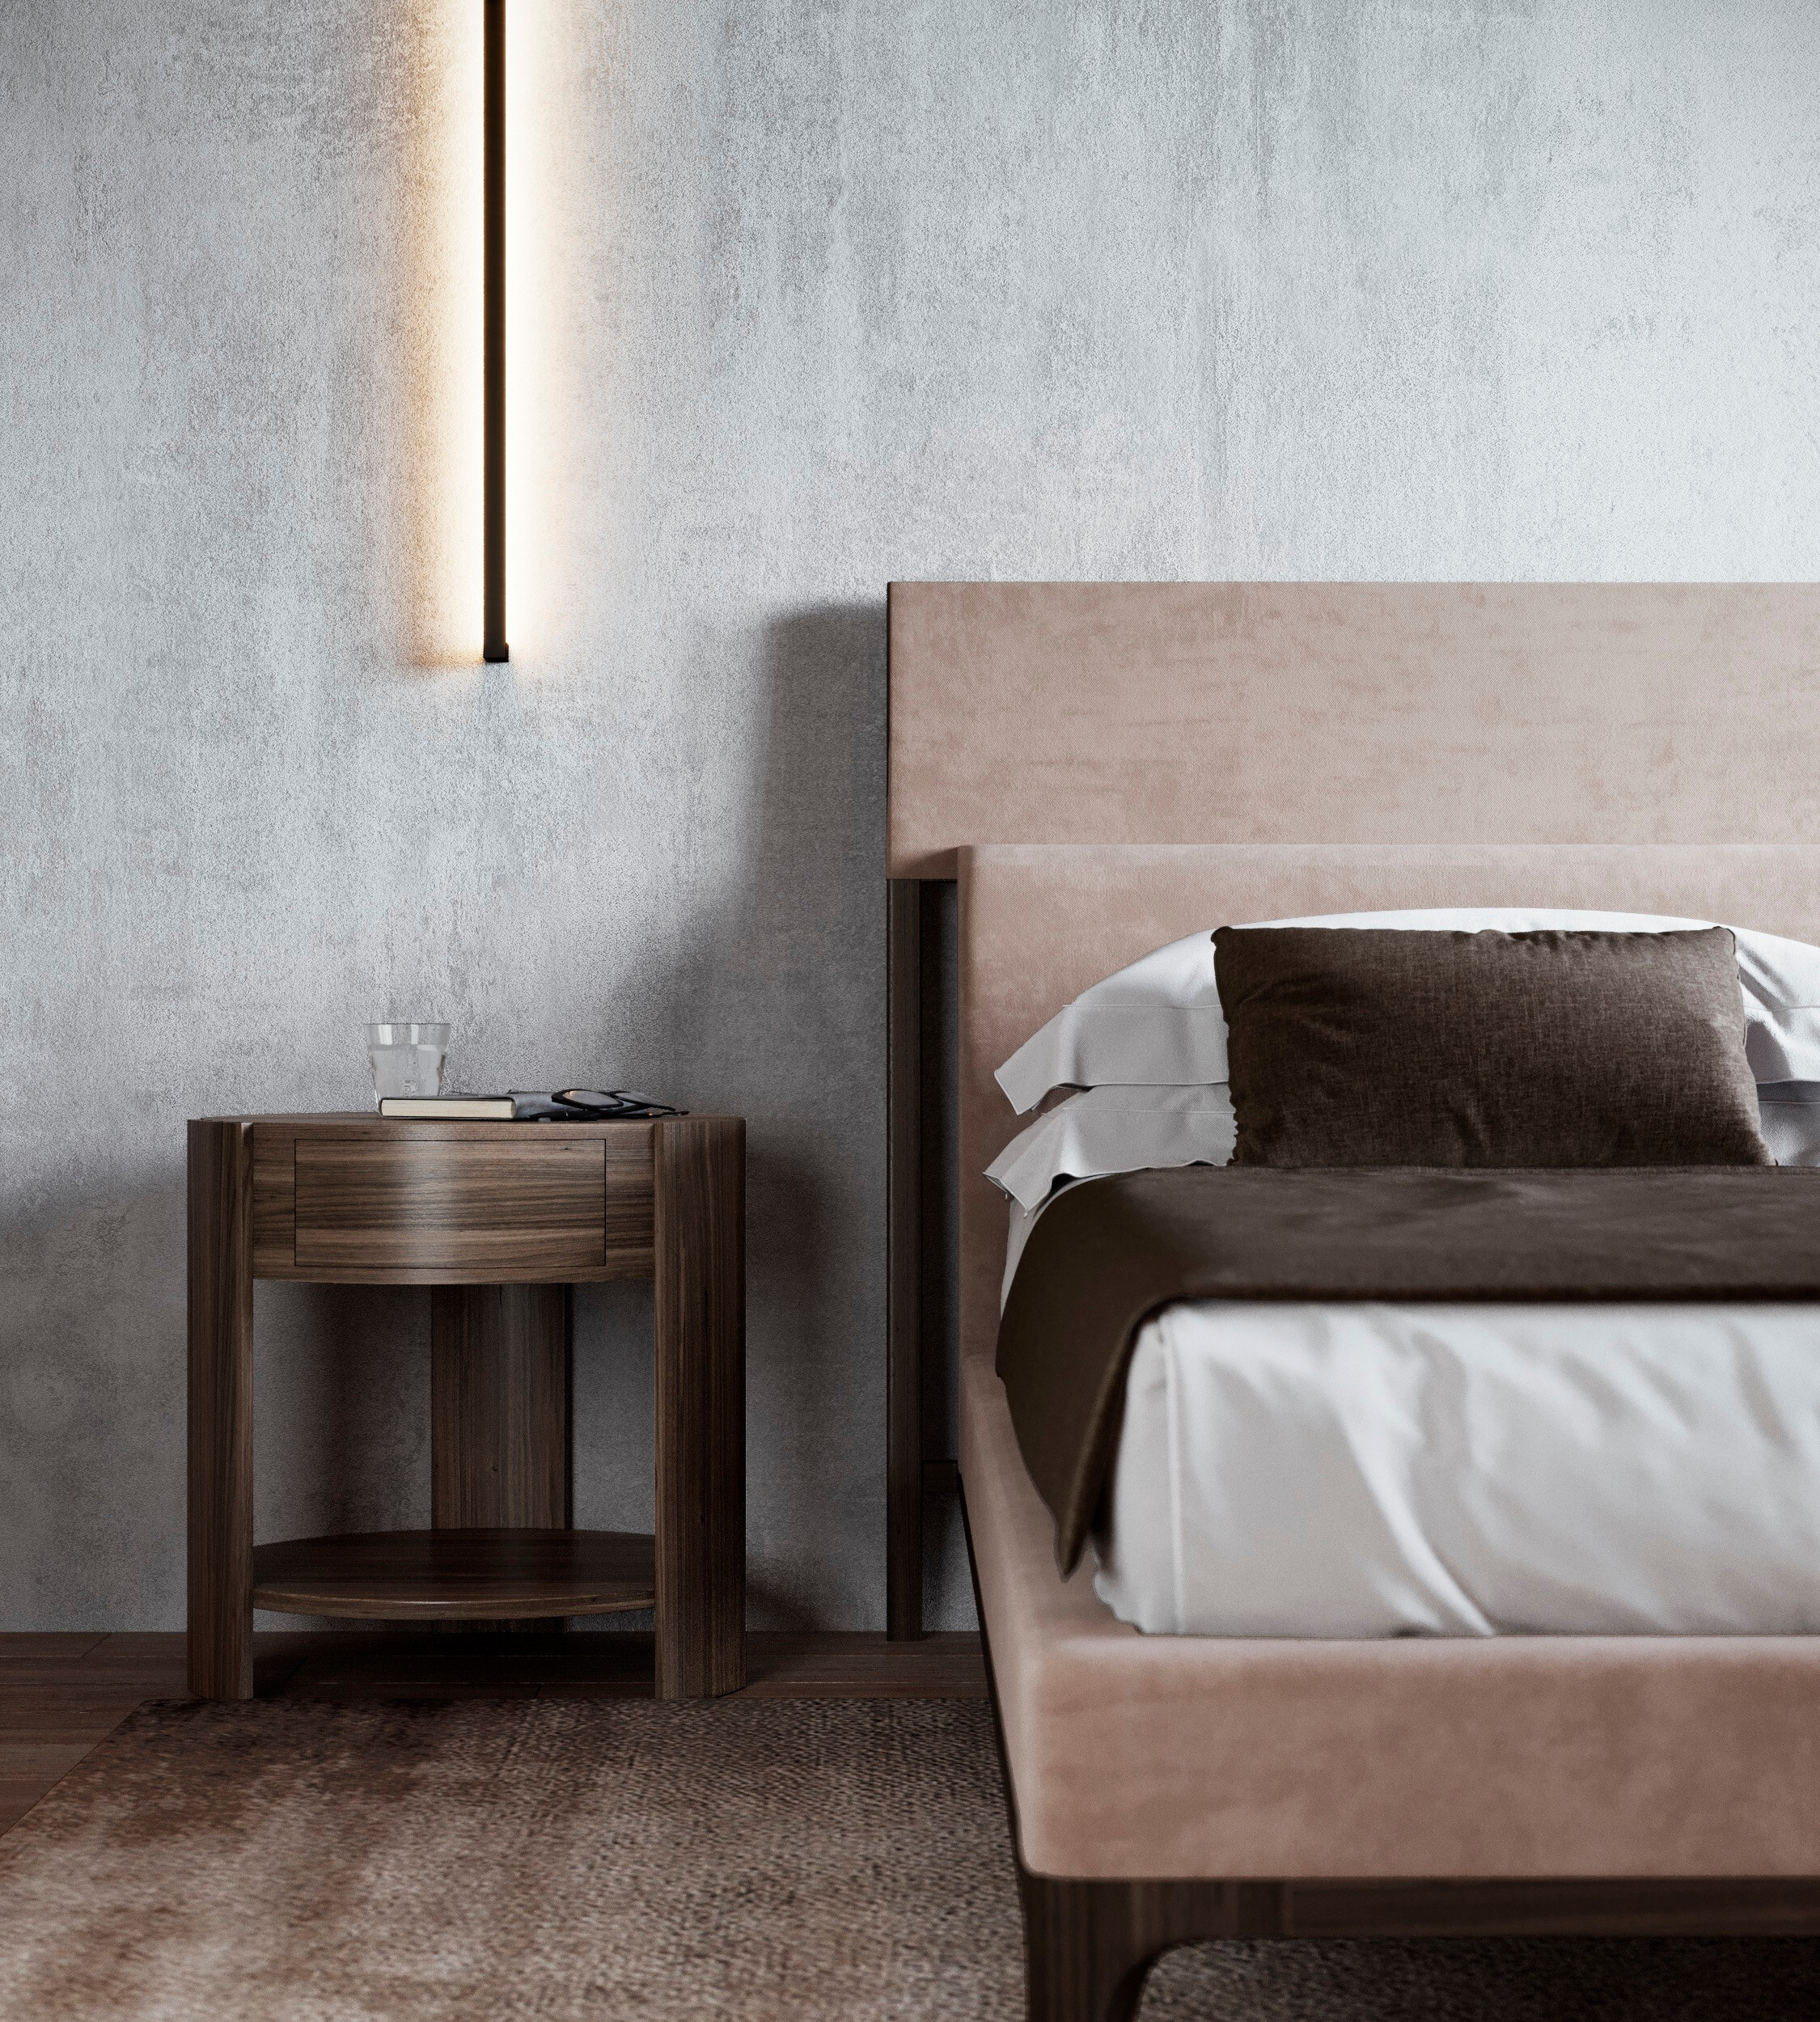 Интерьер спальни с подсветкой настенной и светильниками над кроватью в современном стиле